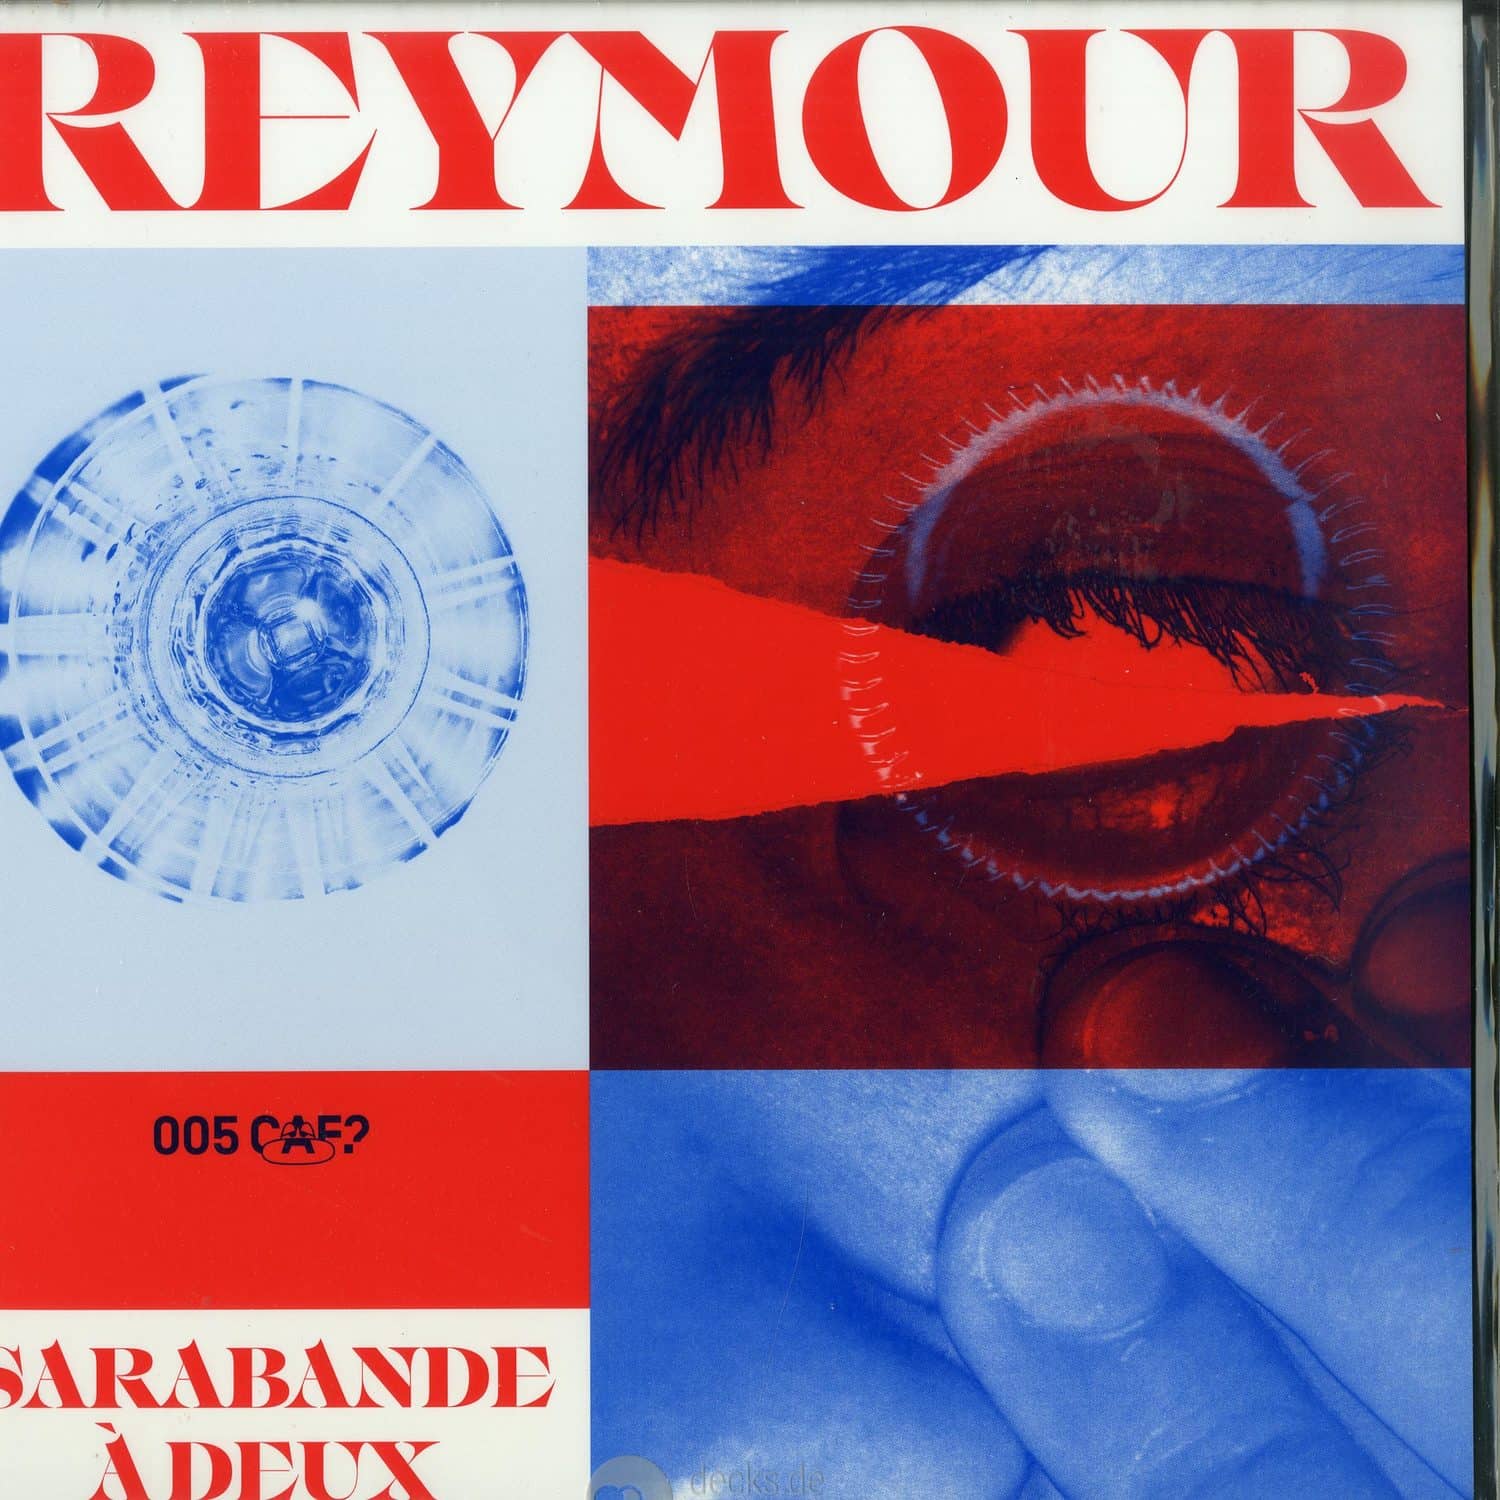 Reymour - SARABANDE A DEUX EP